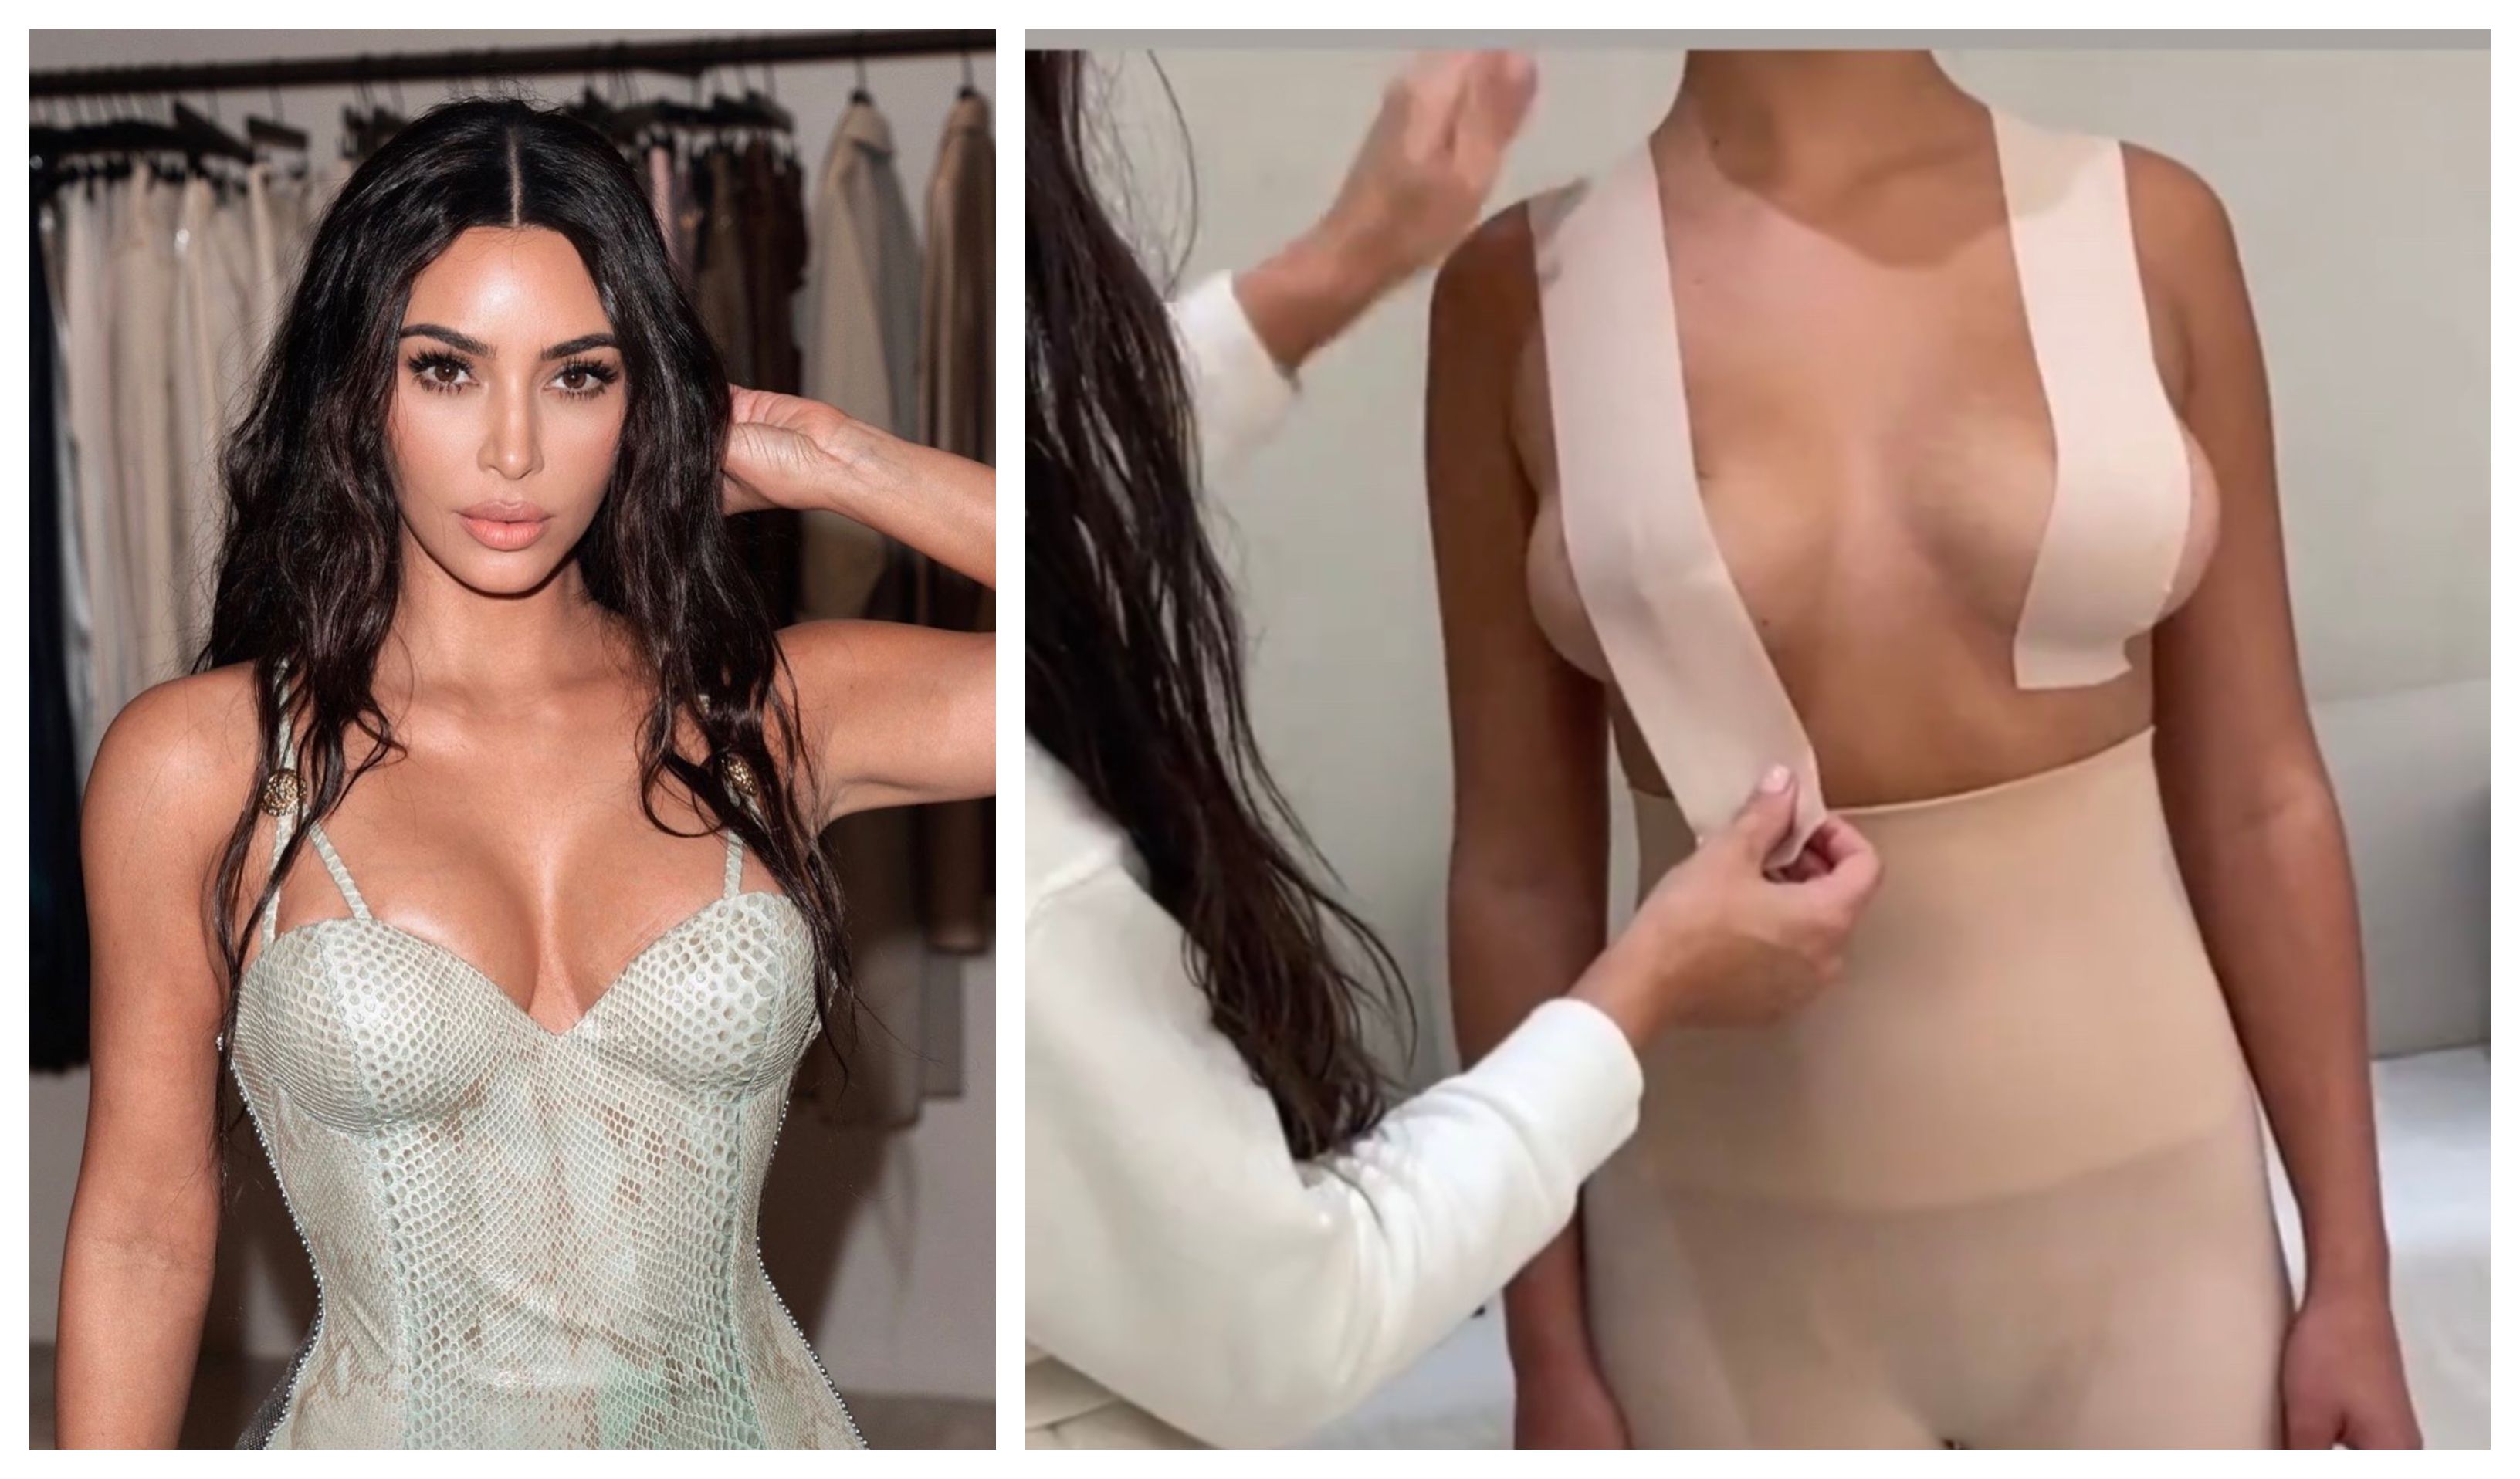 Kim Kardashian u kolekciju donjeg rublja dodala naljepnice za podizanje grudi i u videu pokazala kako se koriste